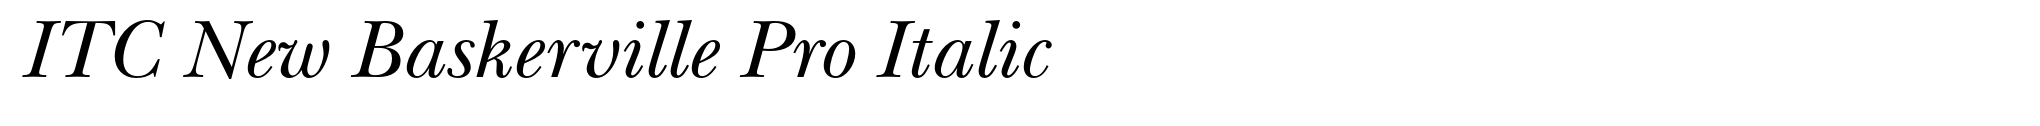 ITC New Baskerville Pro Italic image